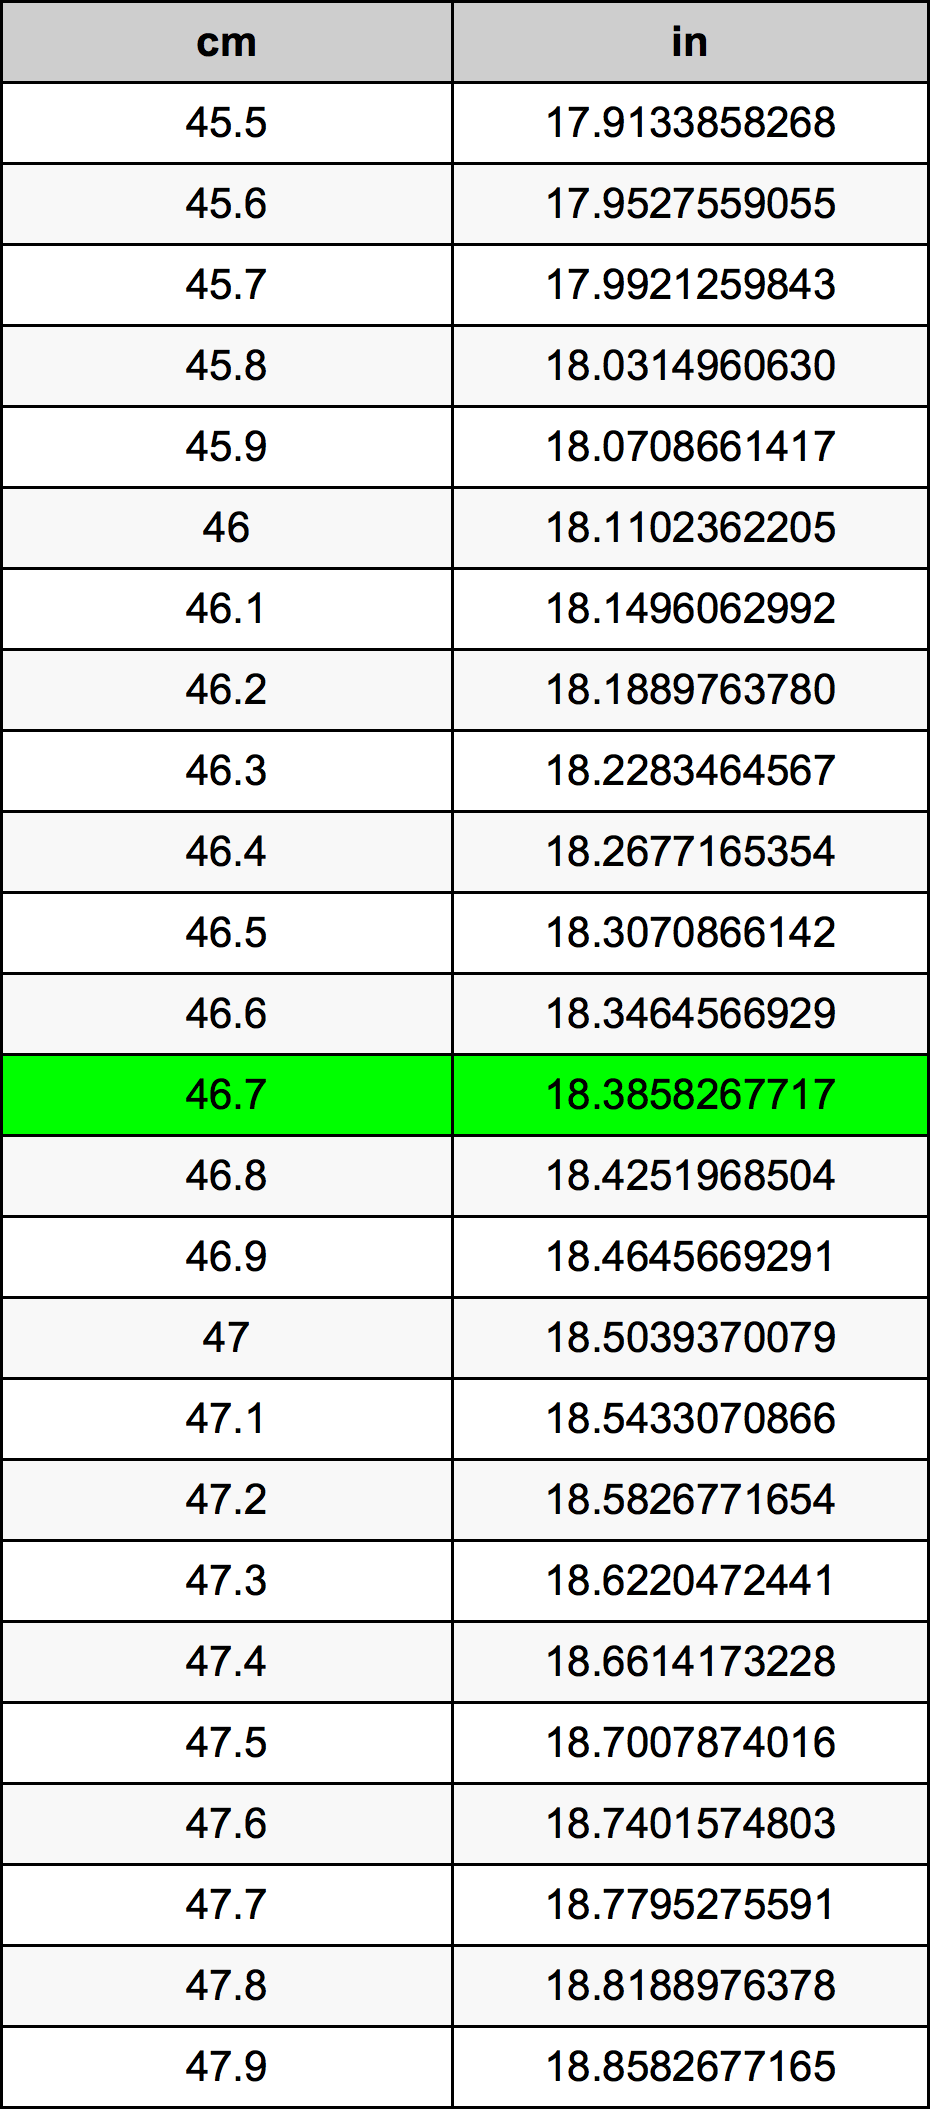 46.7 Centiméter átszámítási táblázat